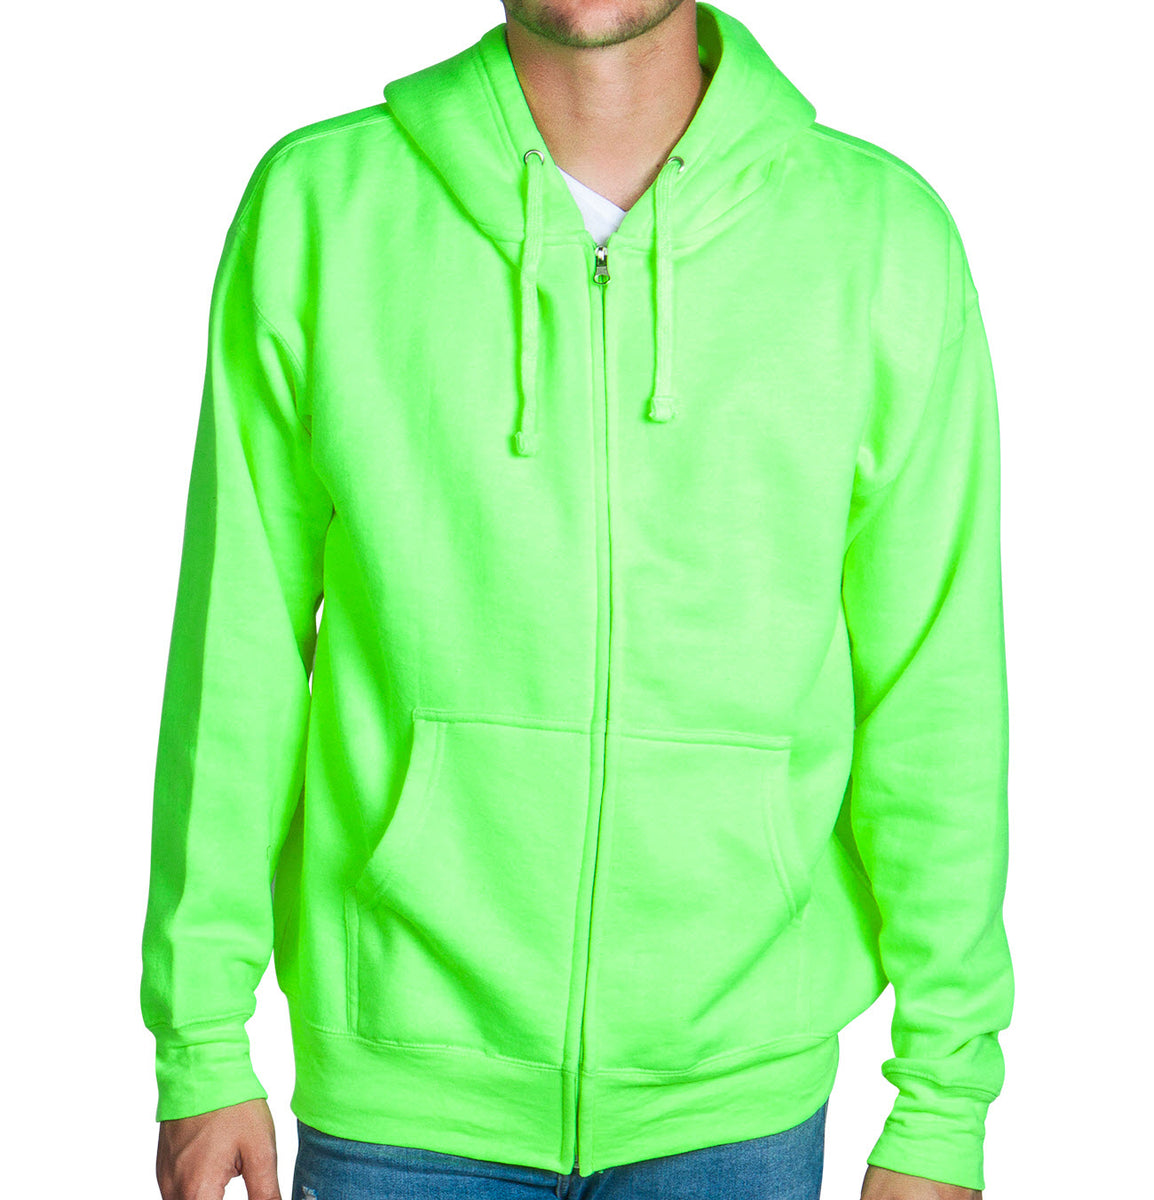 Neon Green Zip Up Hoodie Sweatshirt – Flex Suits